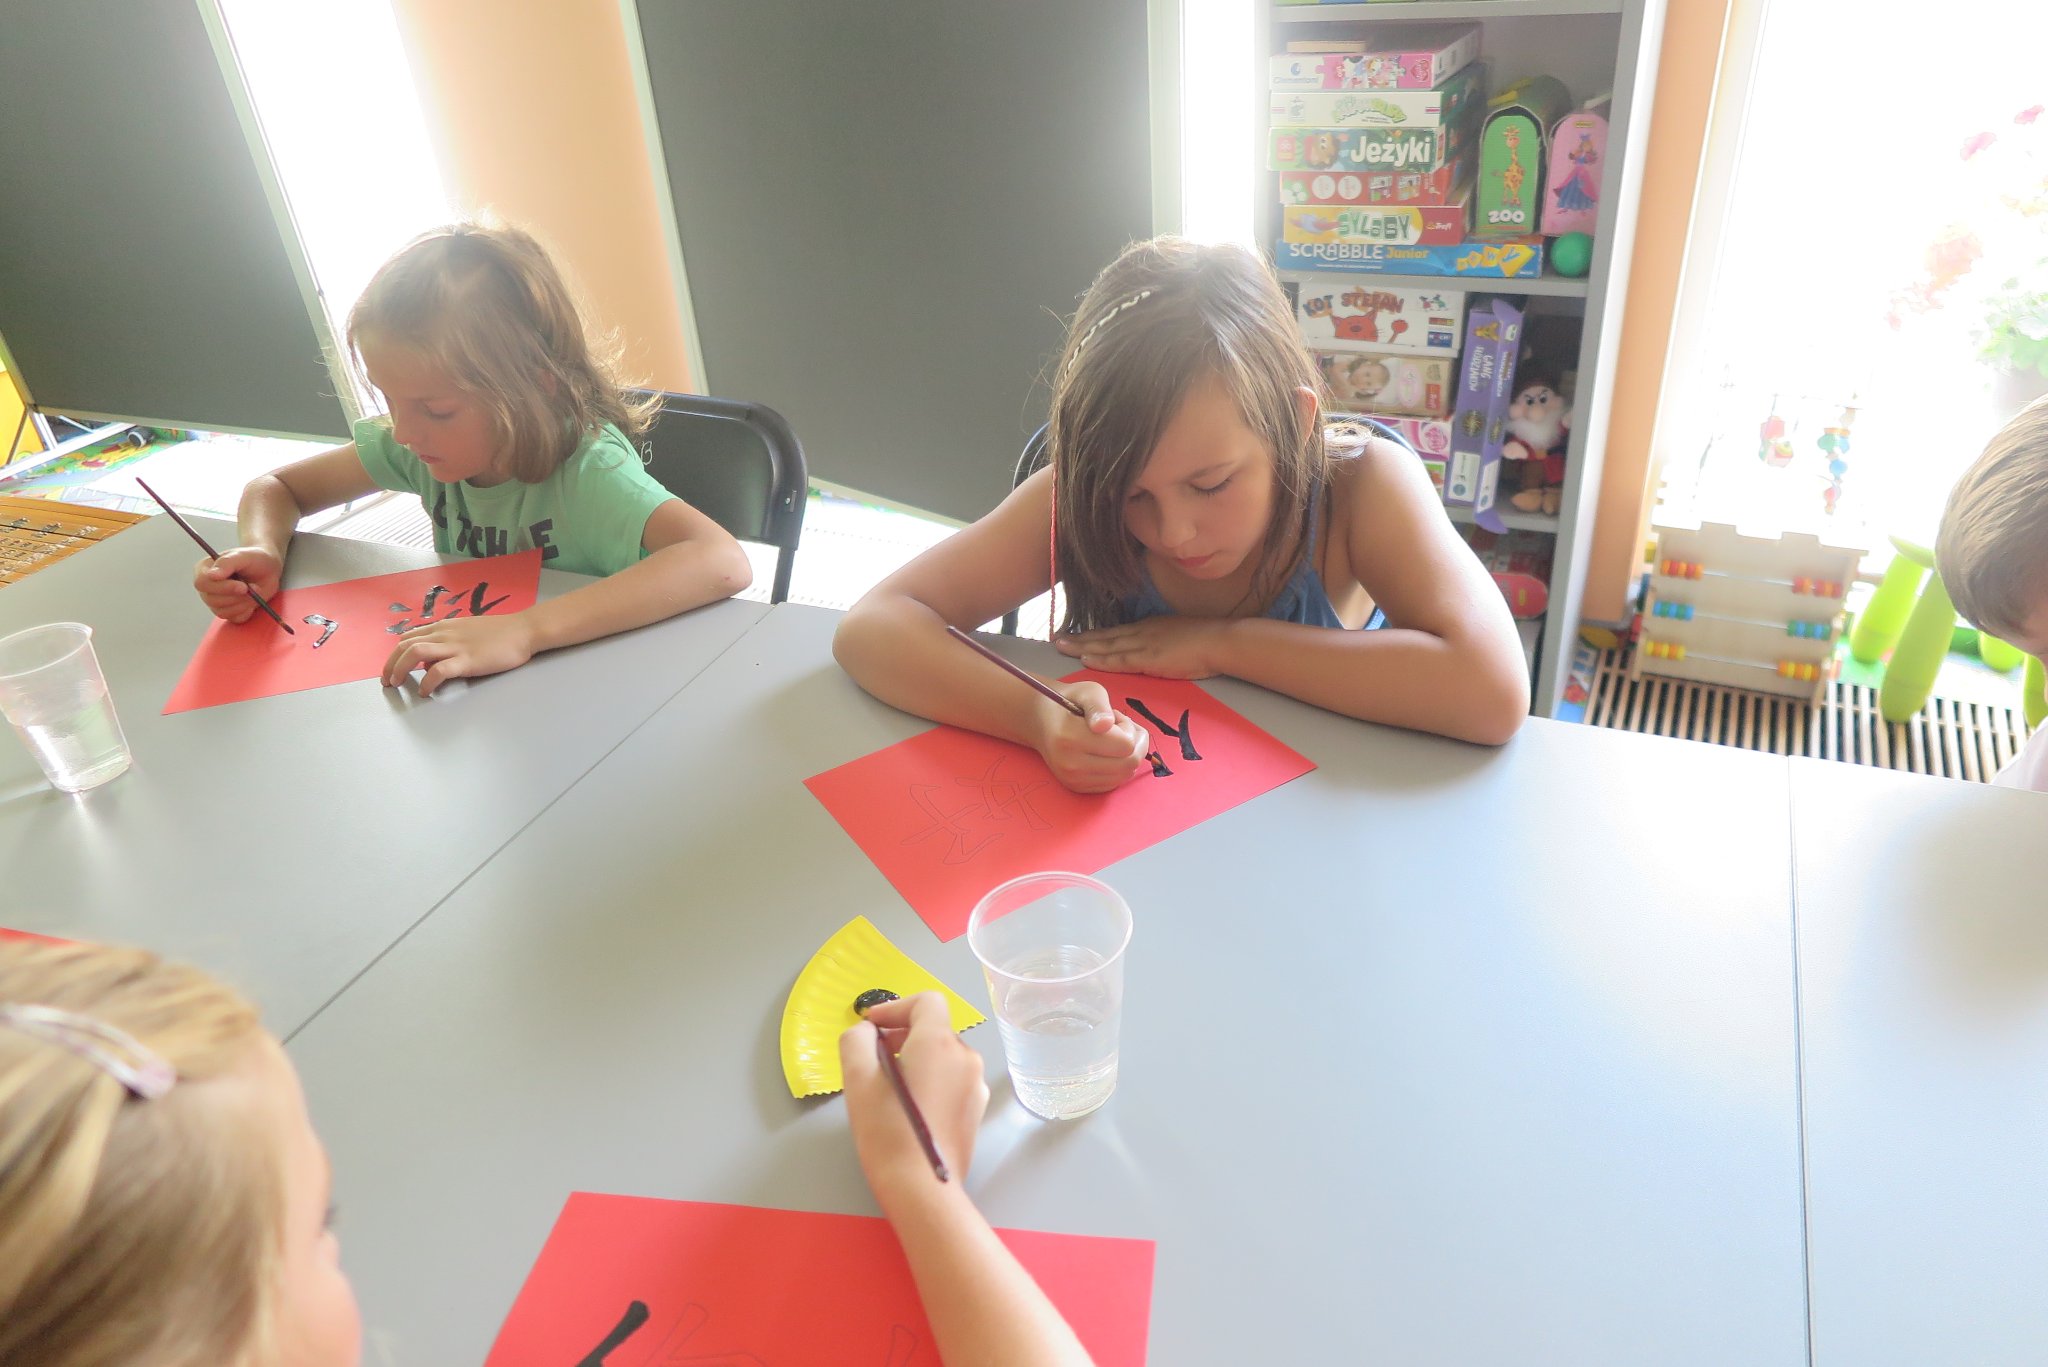 uczestnicy warsztatów podróżniczych z Anną Jaklewicz uczą się pisać chińskie symbole na czerwonych kartkach, siedzą przy stole w oddziale dla dzieci